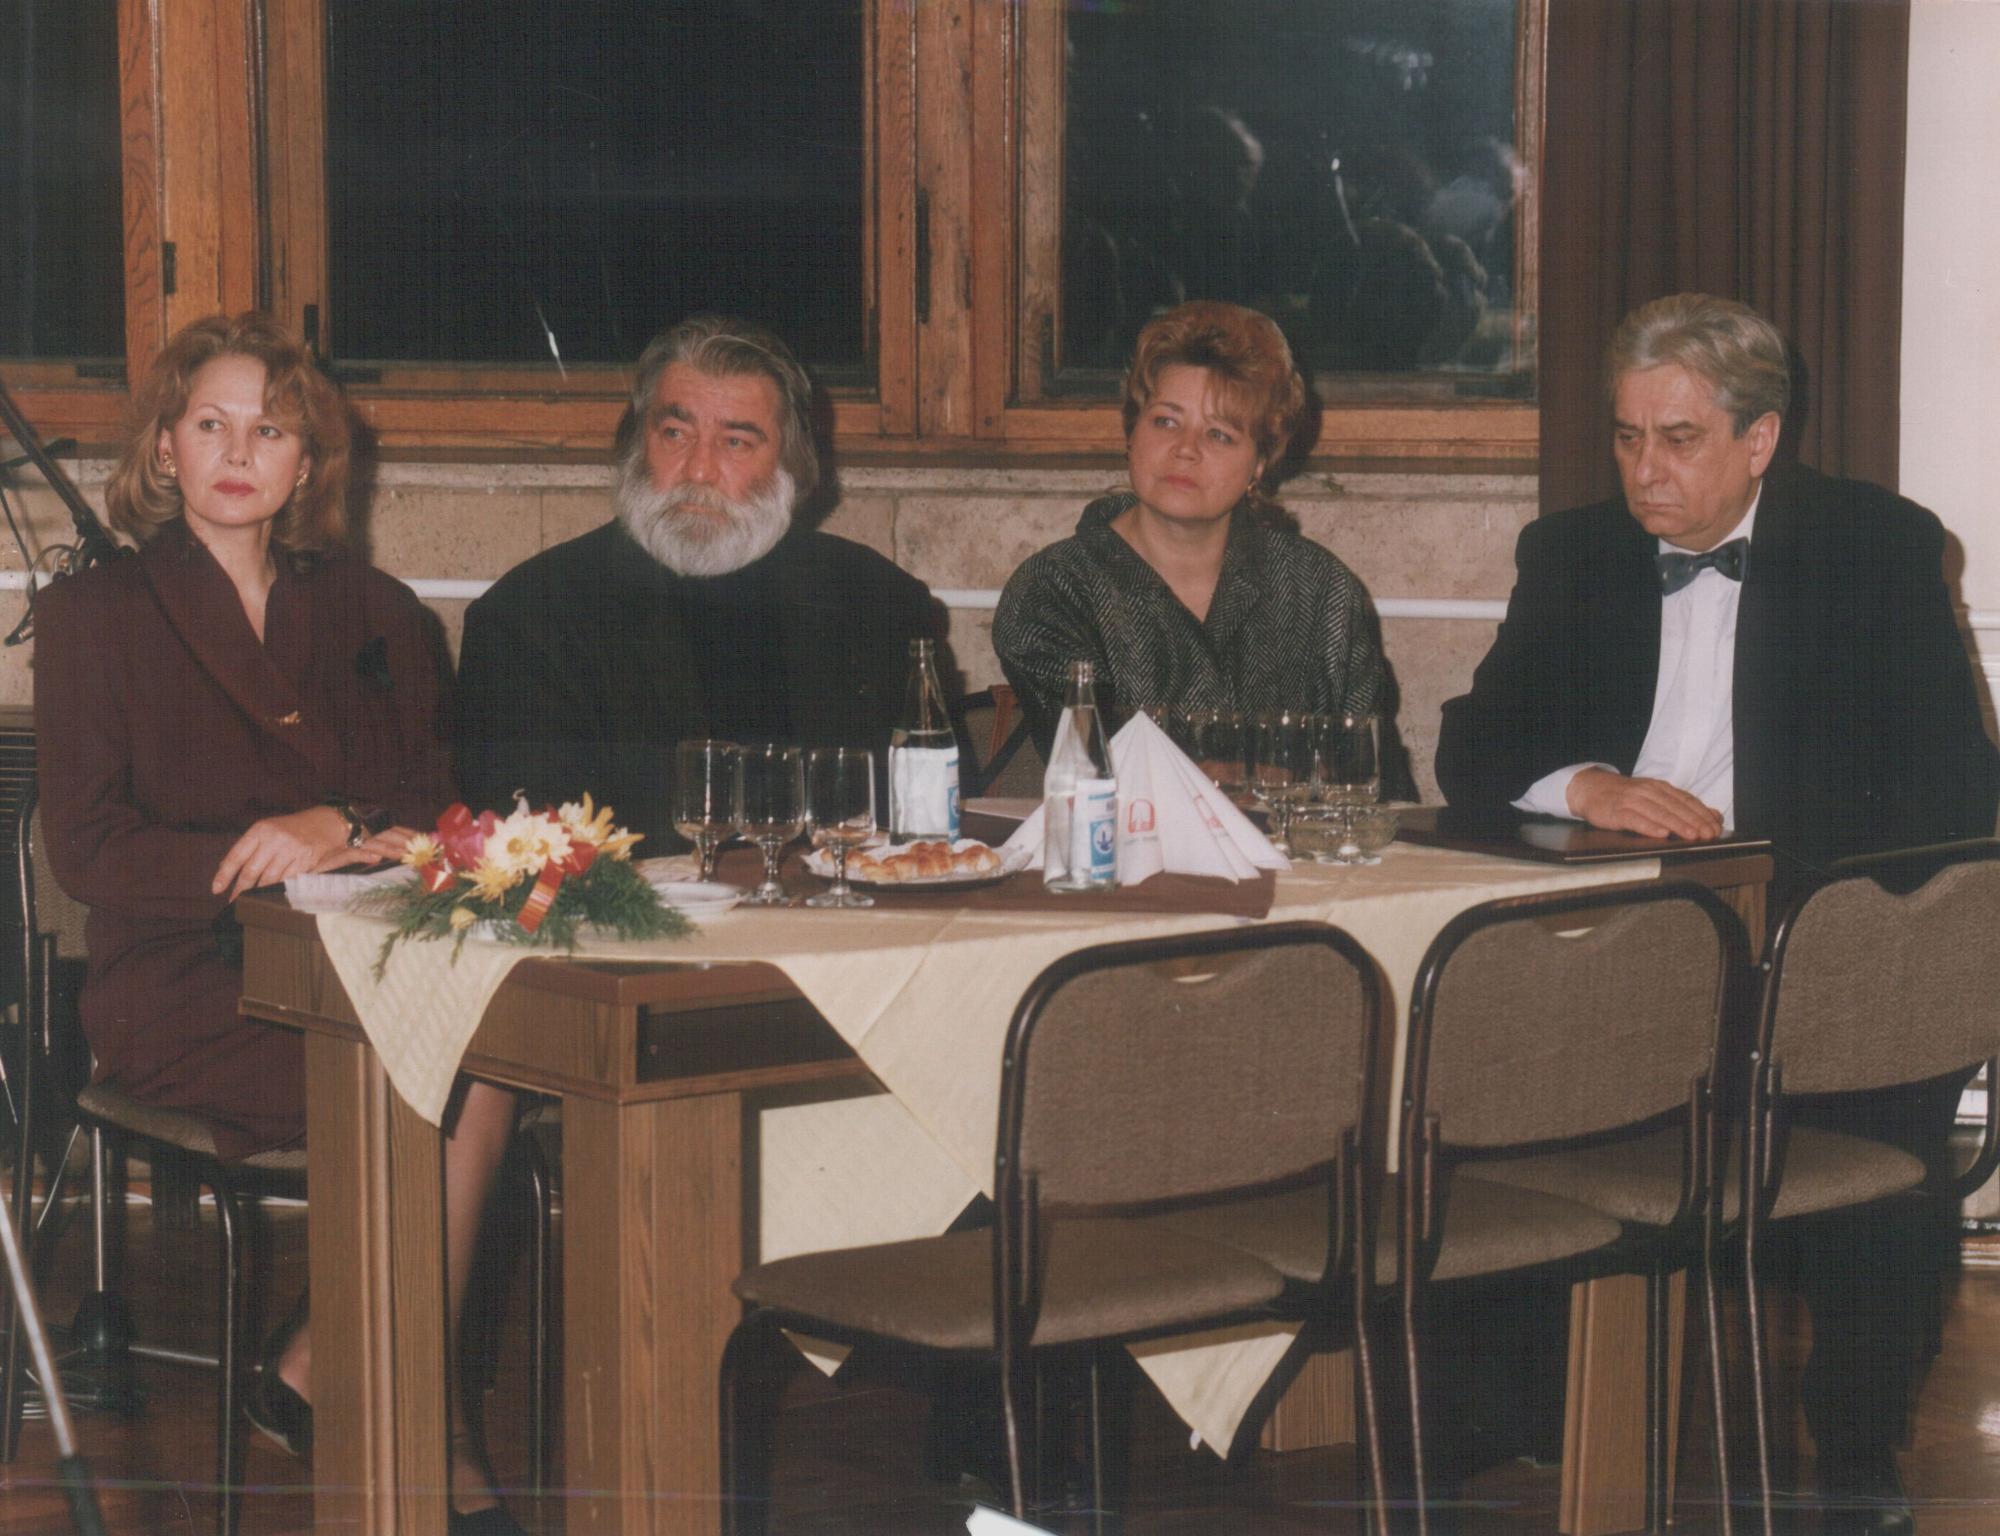 Szegedi Erika, Sára Sándor, Páskándi Anikó és Páskándi Géza a Magyar Művészeti Akadémia rendezvényén (1992)